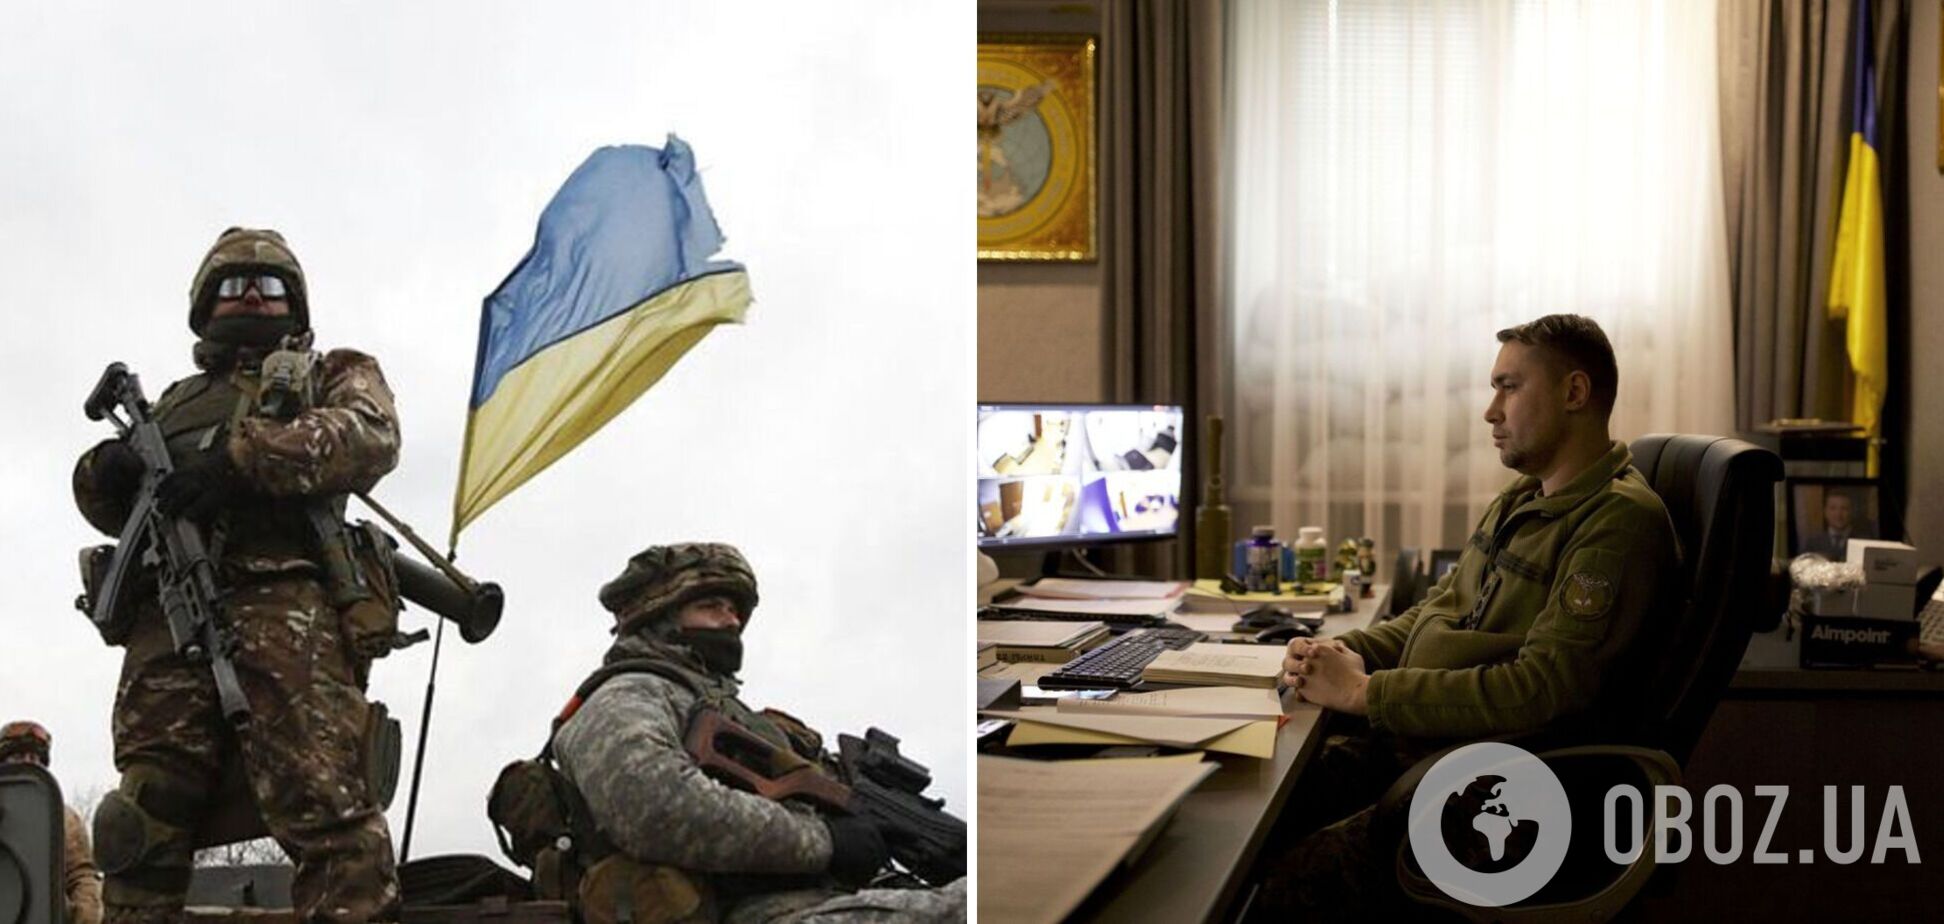 Буданов: Україна воюватиме доти, доки з її території не будуть вигнані всі війська РФ